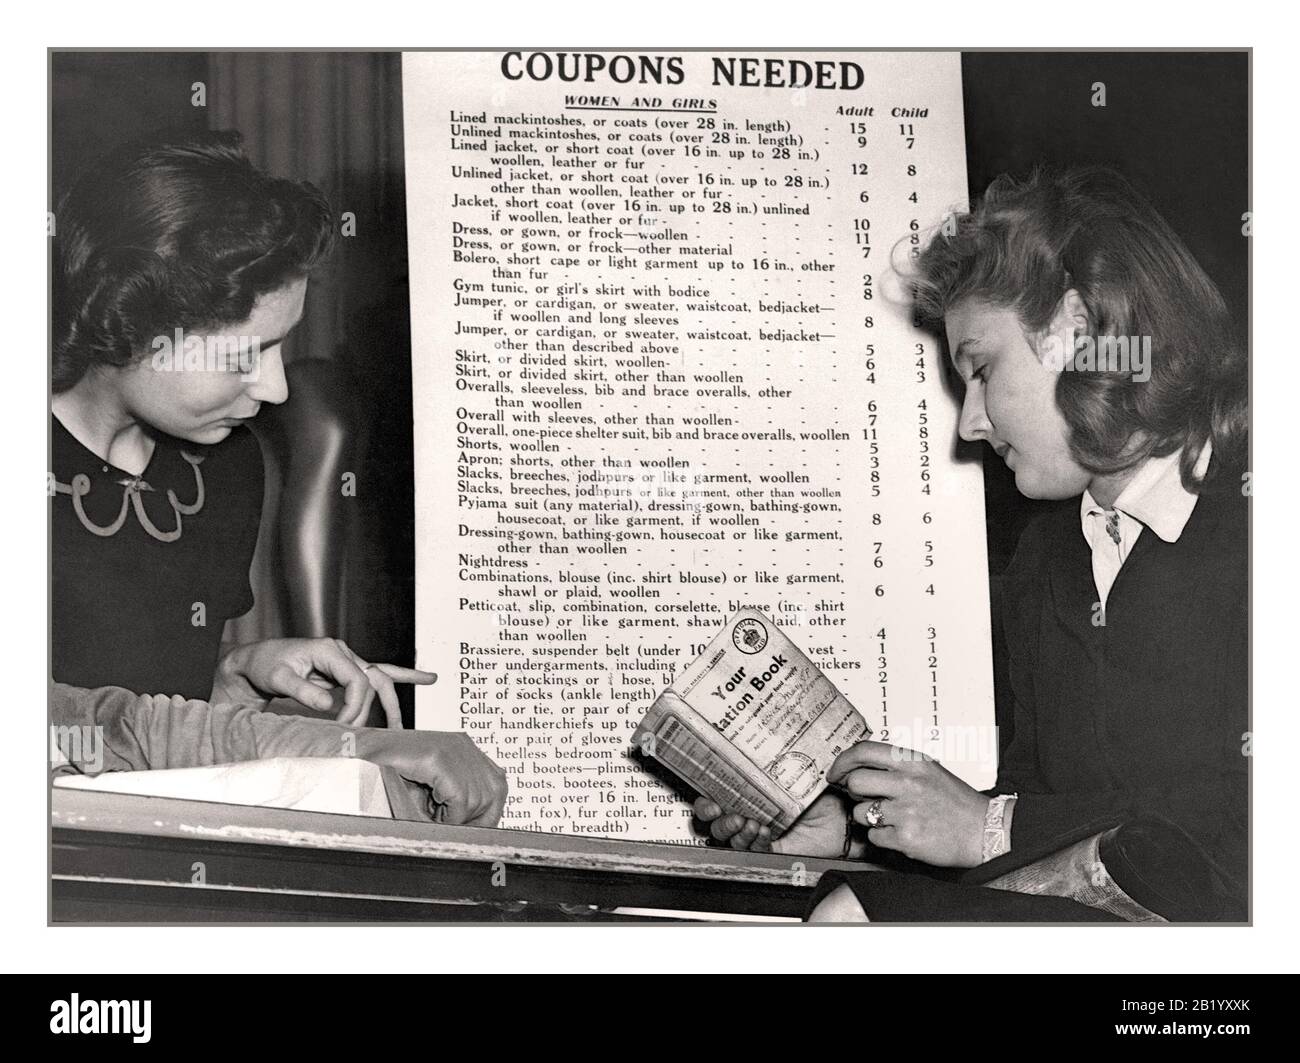 Archives des années 1940 'coupons Nécessaire' Ration Book WW2 Propaganda image de deux femmes avec liste de femmes rationnées des vêtements nécessitant des coupons de ration désignés World War II second World War Banque D'Images